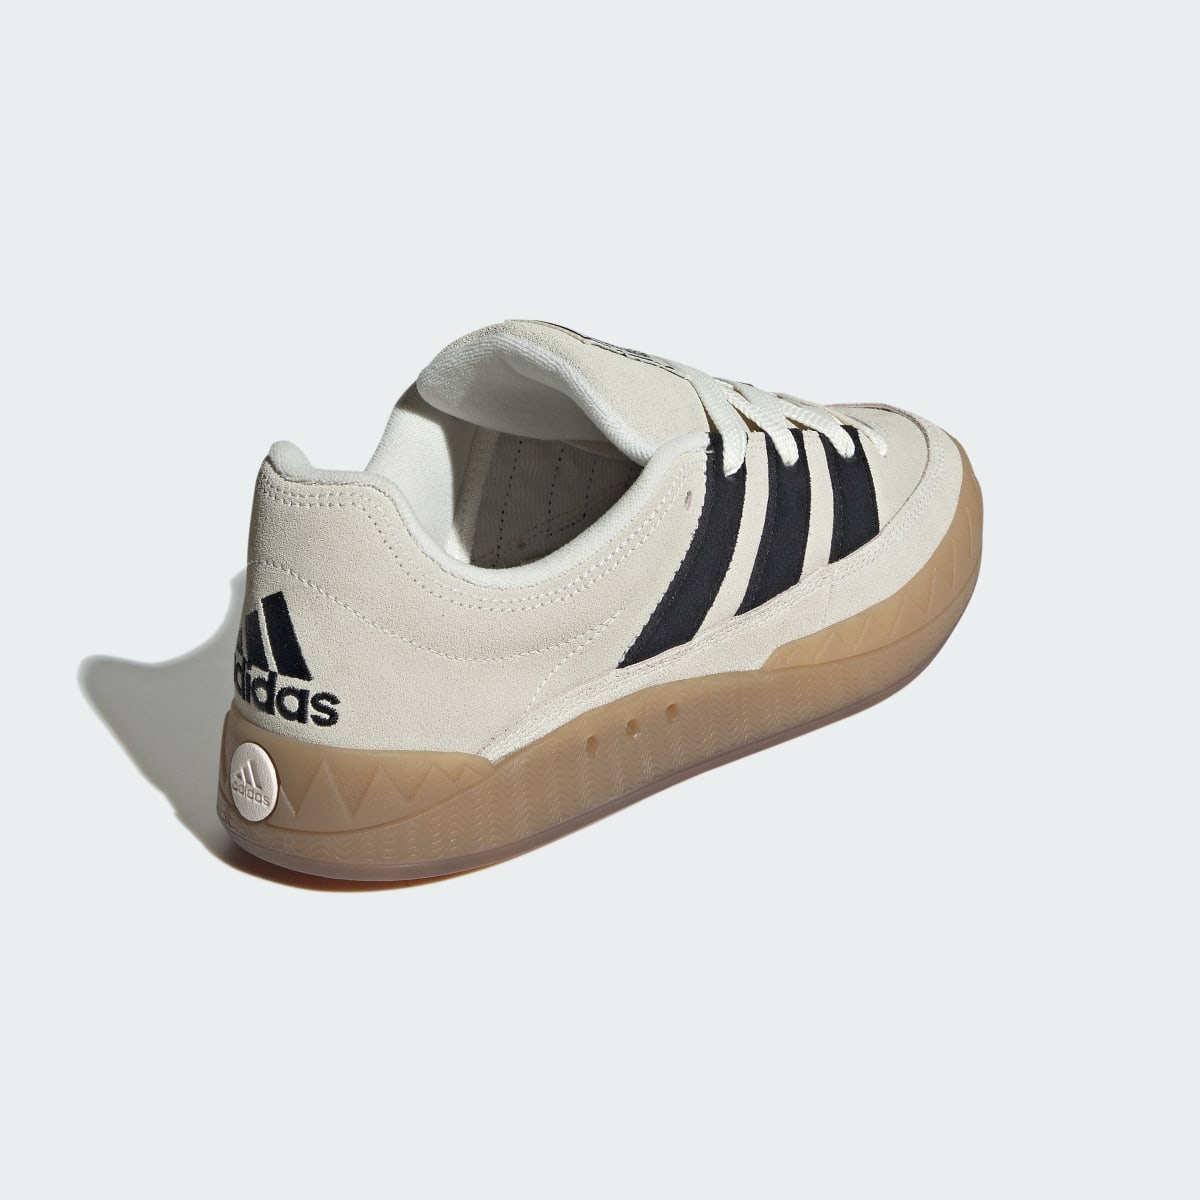 Adidas Adimatic Shoes. 6